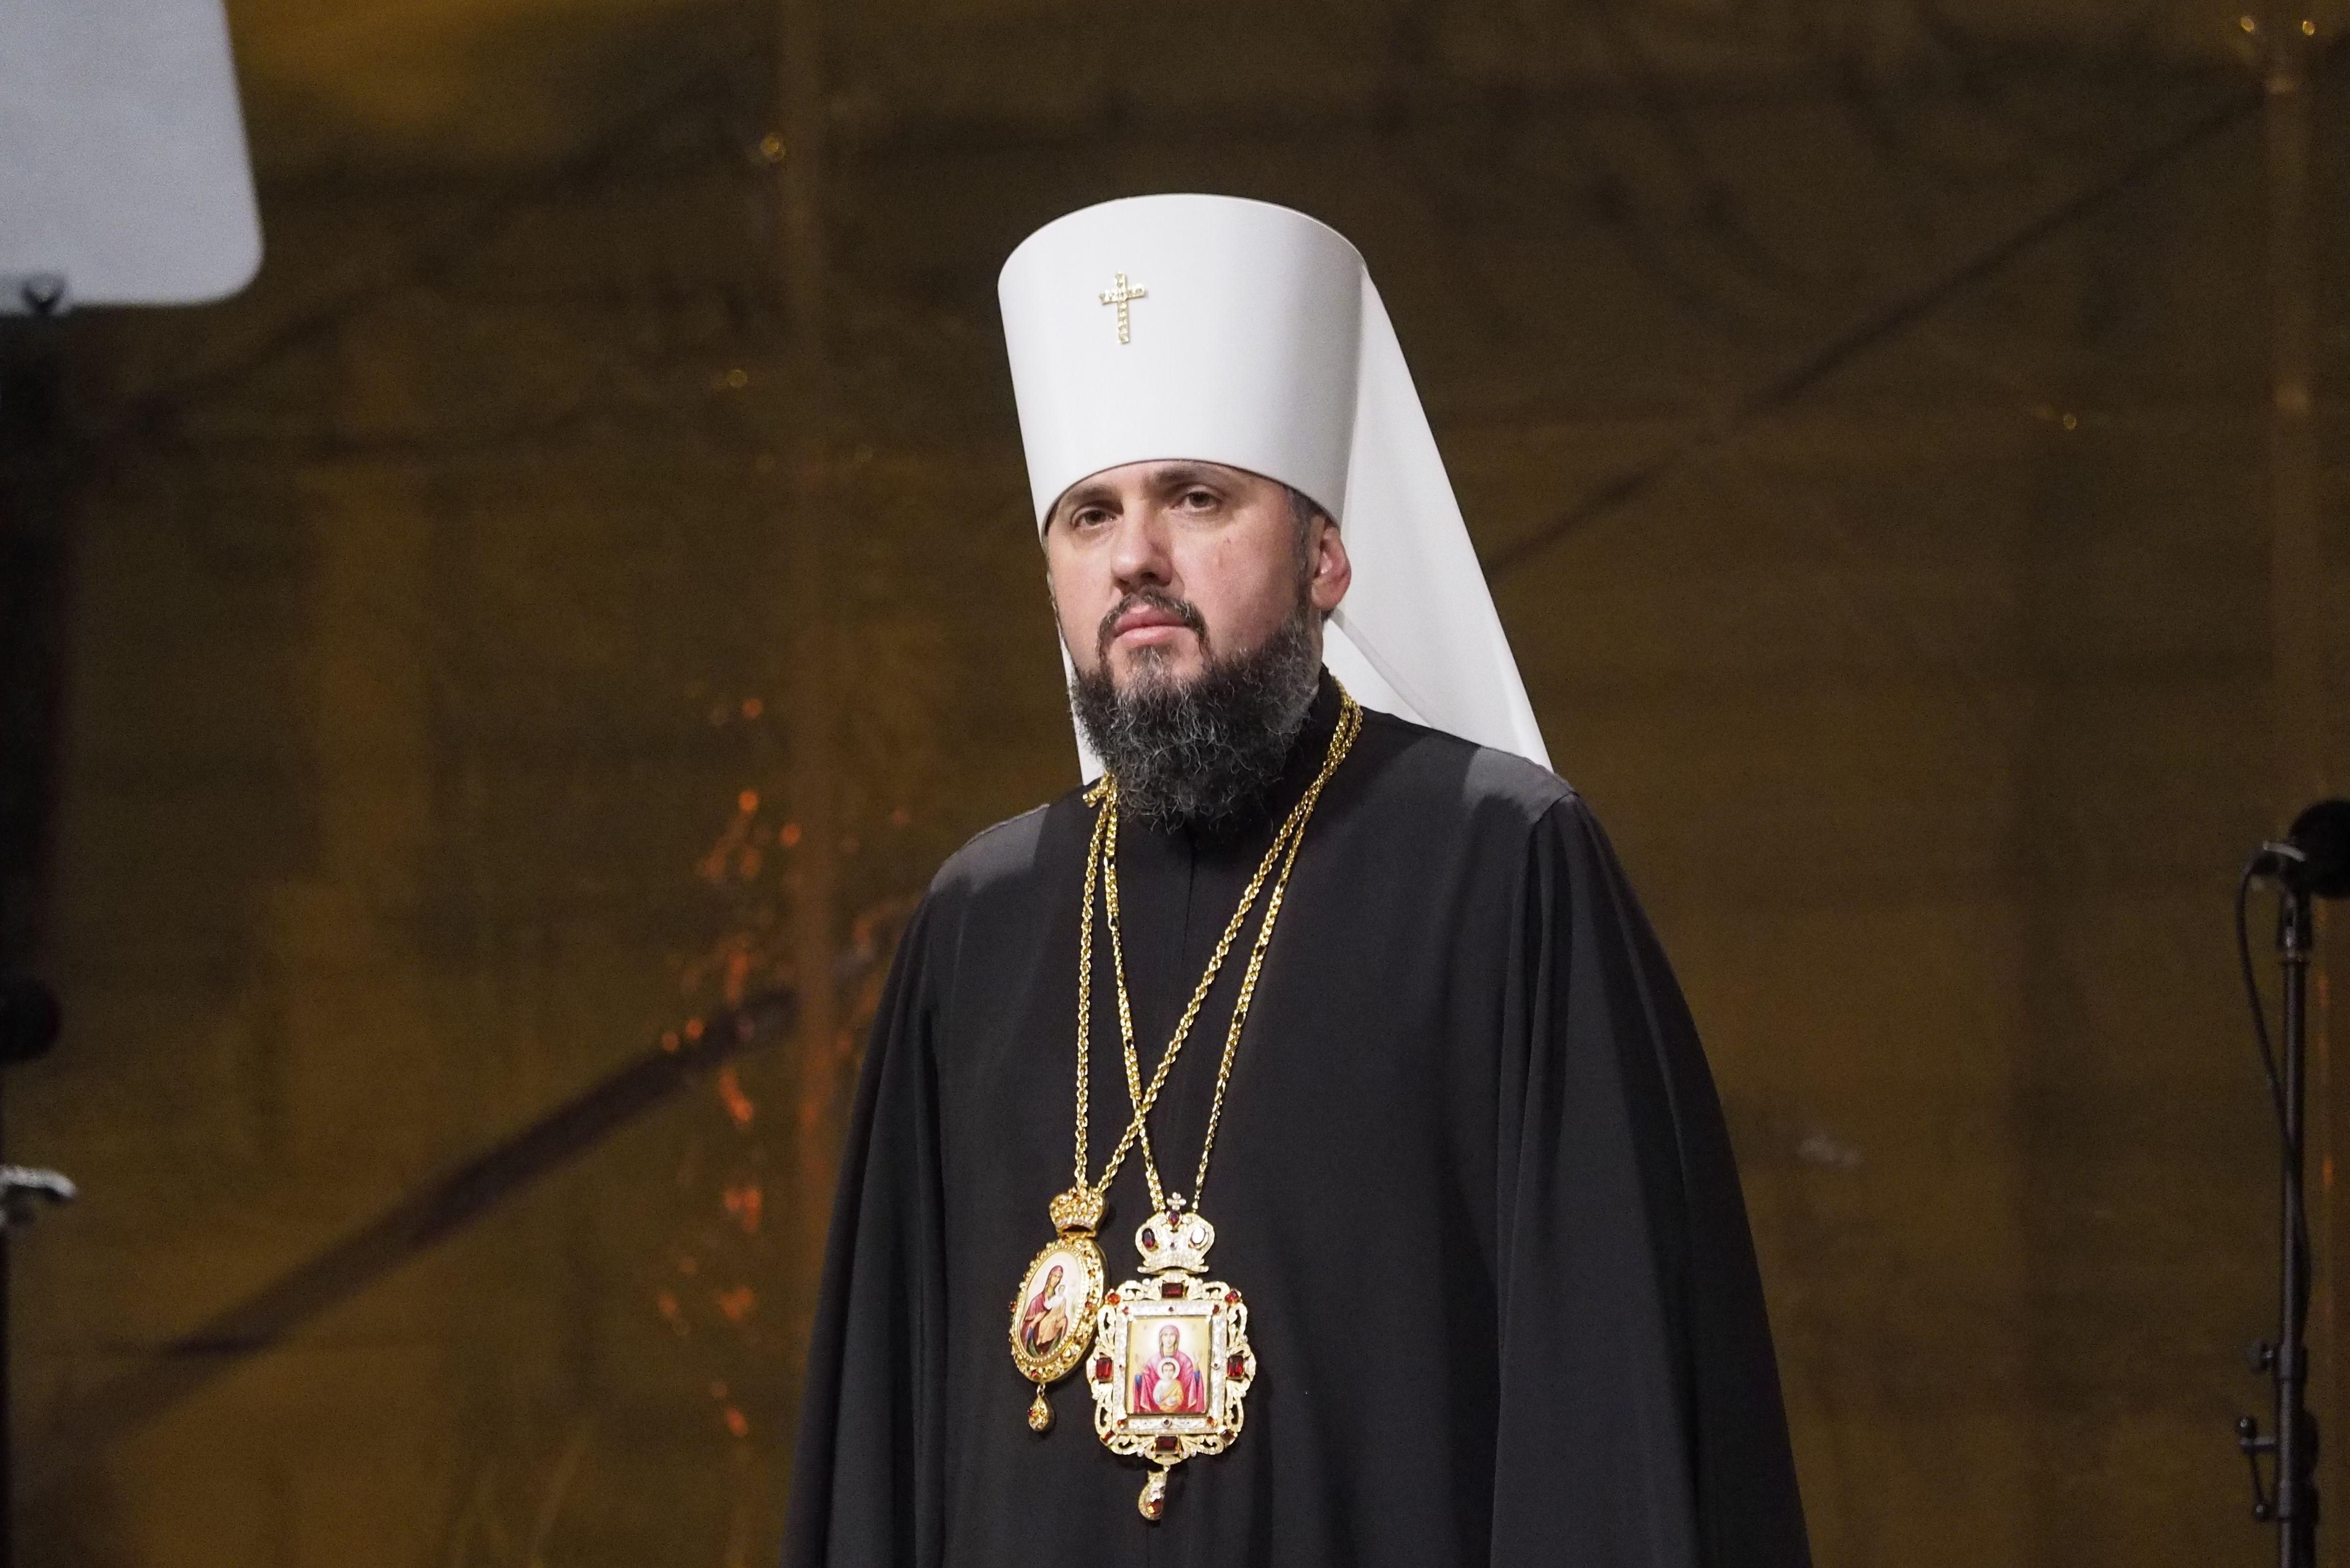 Украинцы довольны главой Православной церкви Украины: результаты опроса